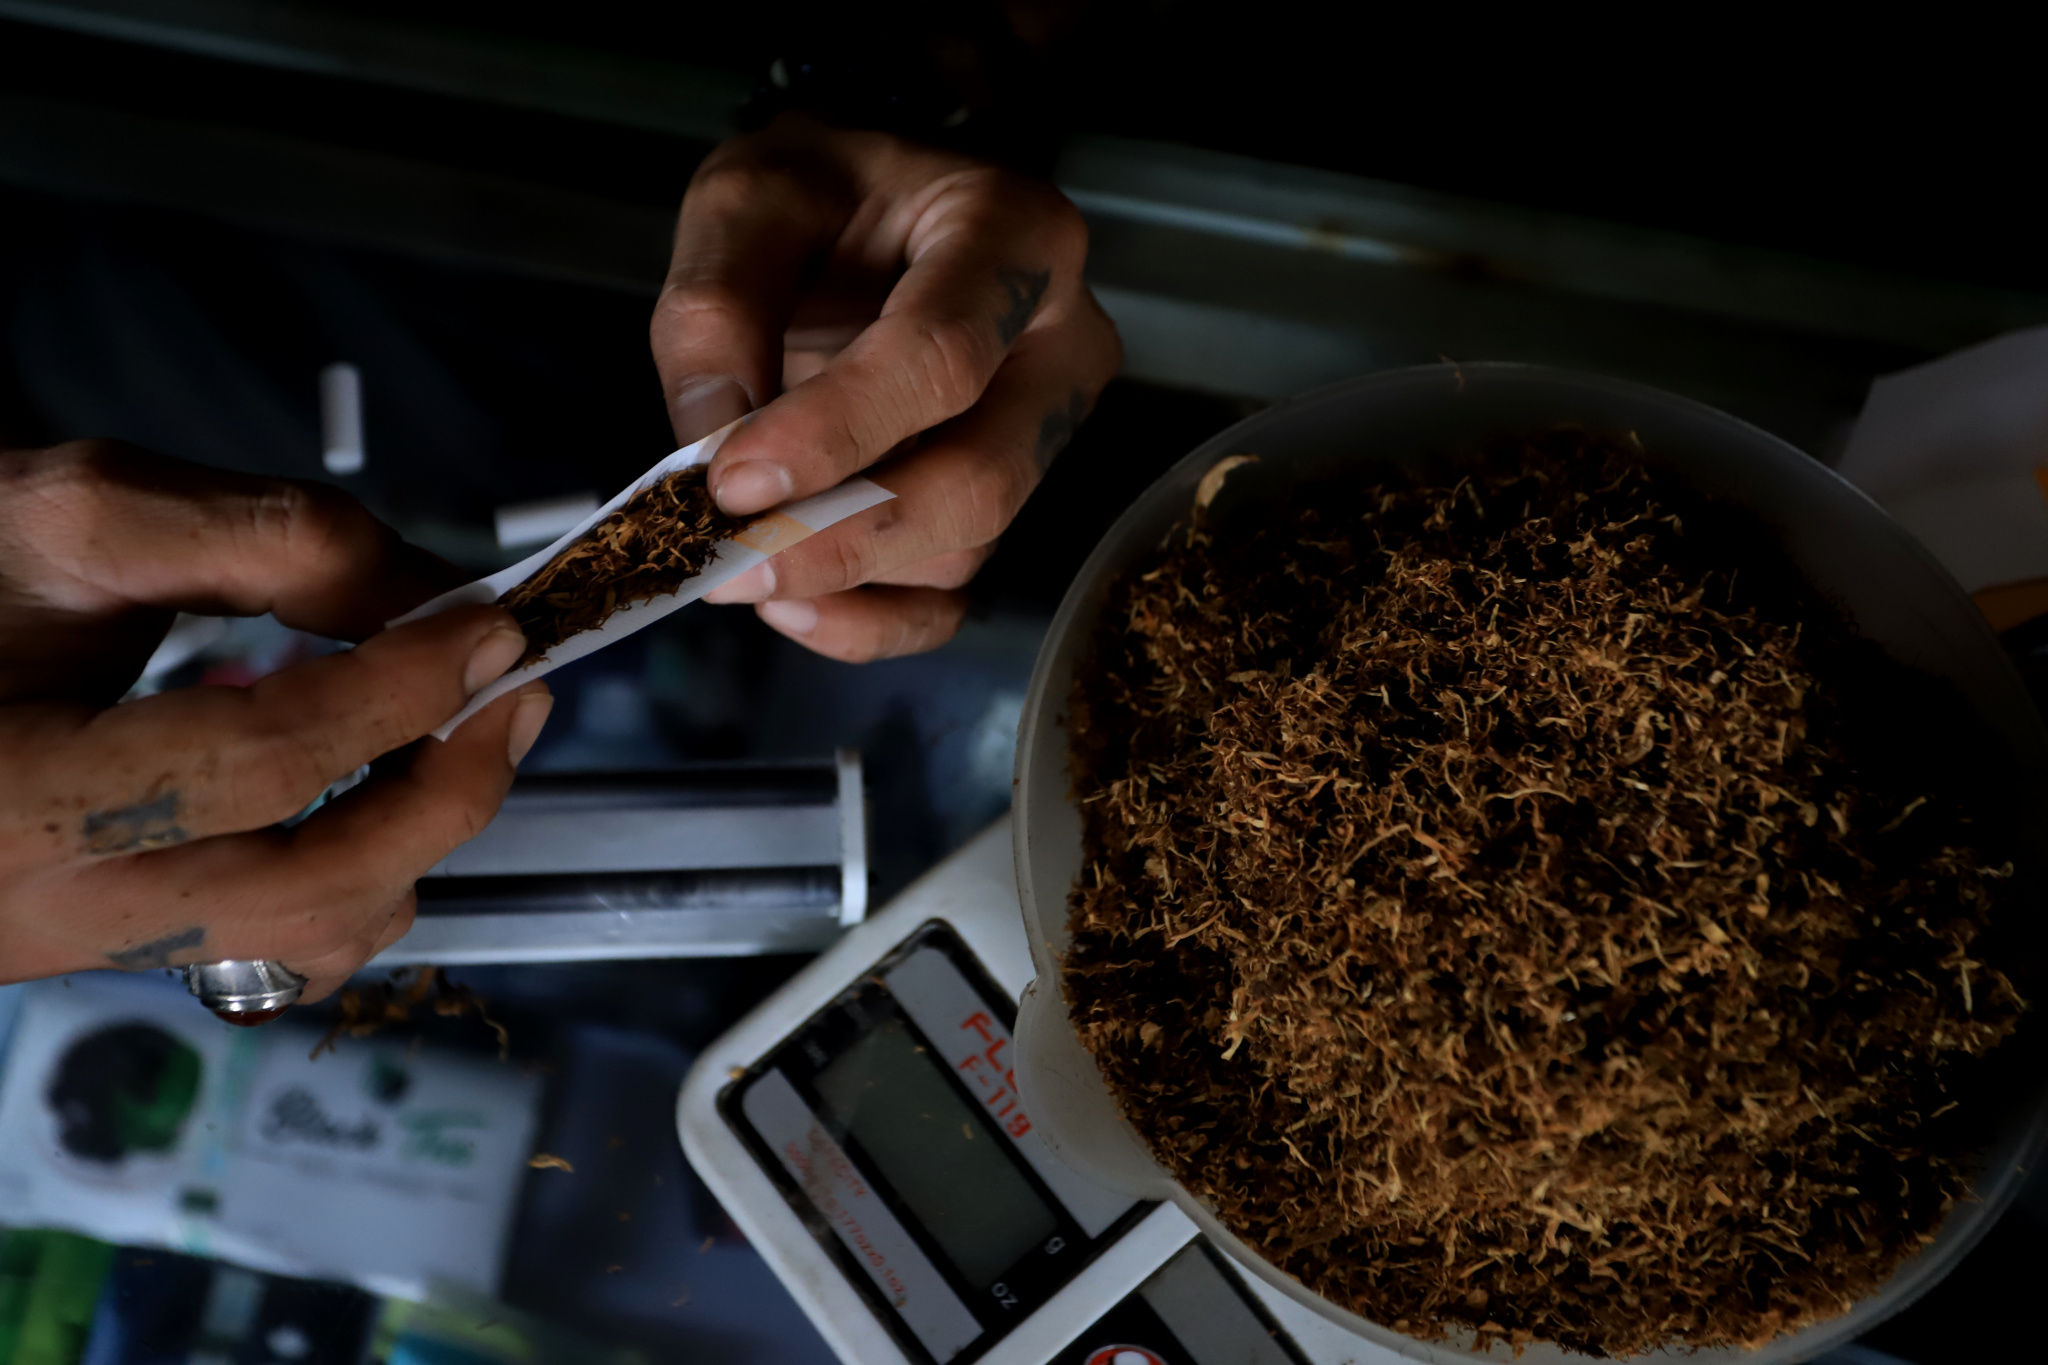 Pekerja melinting tembakau di gerai Kamarasa yang menjual tembakau dengan berbagai varian di kawasan Pondok Cabe, Pamulang, Tangerang Selatan, Rabu, 5 Januari 2022. Foto: Ismail Pohan/TrenAsia